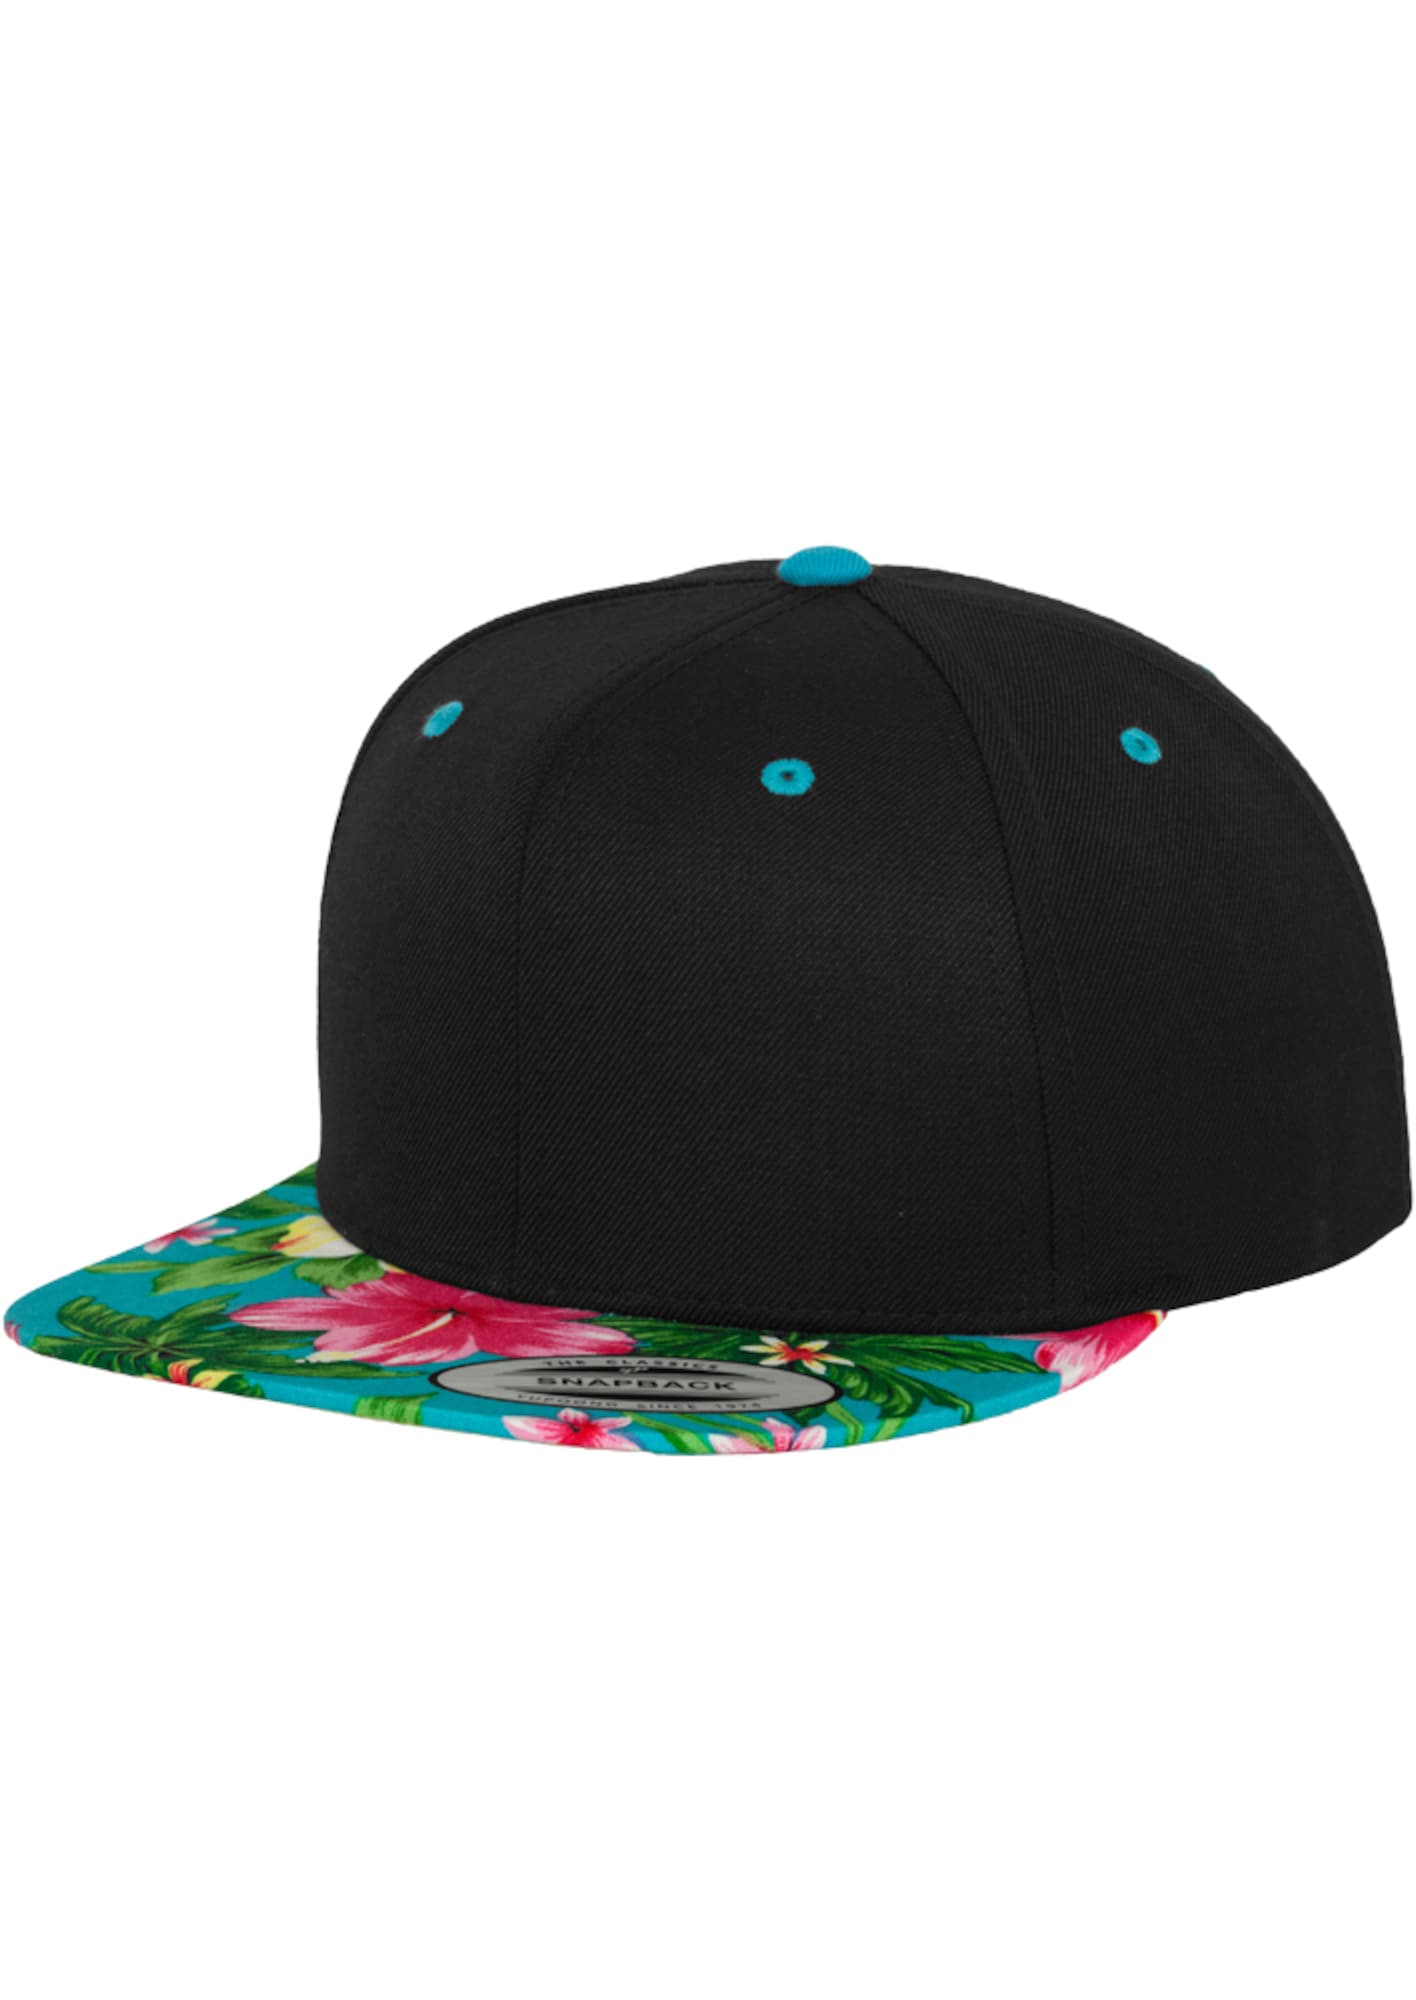 Flexfit Kepurė 'Hawaiian' vandens spalva / mišrios spalvos / juoda